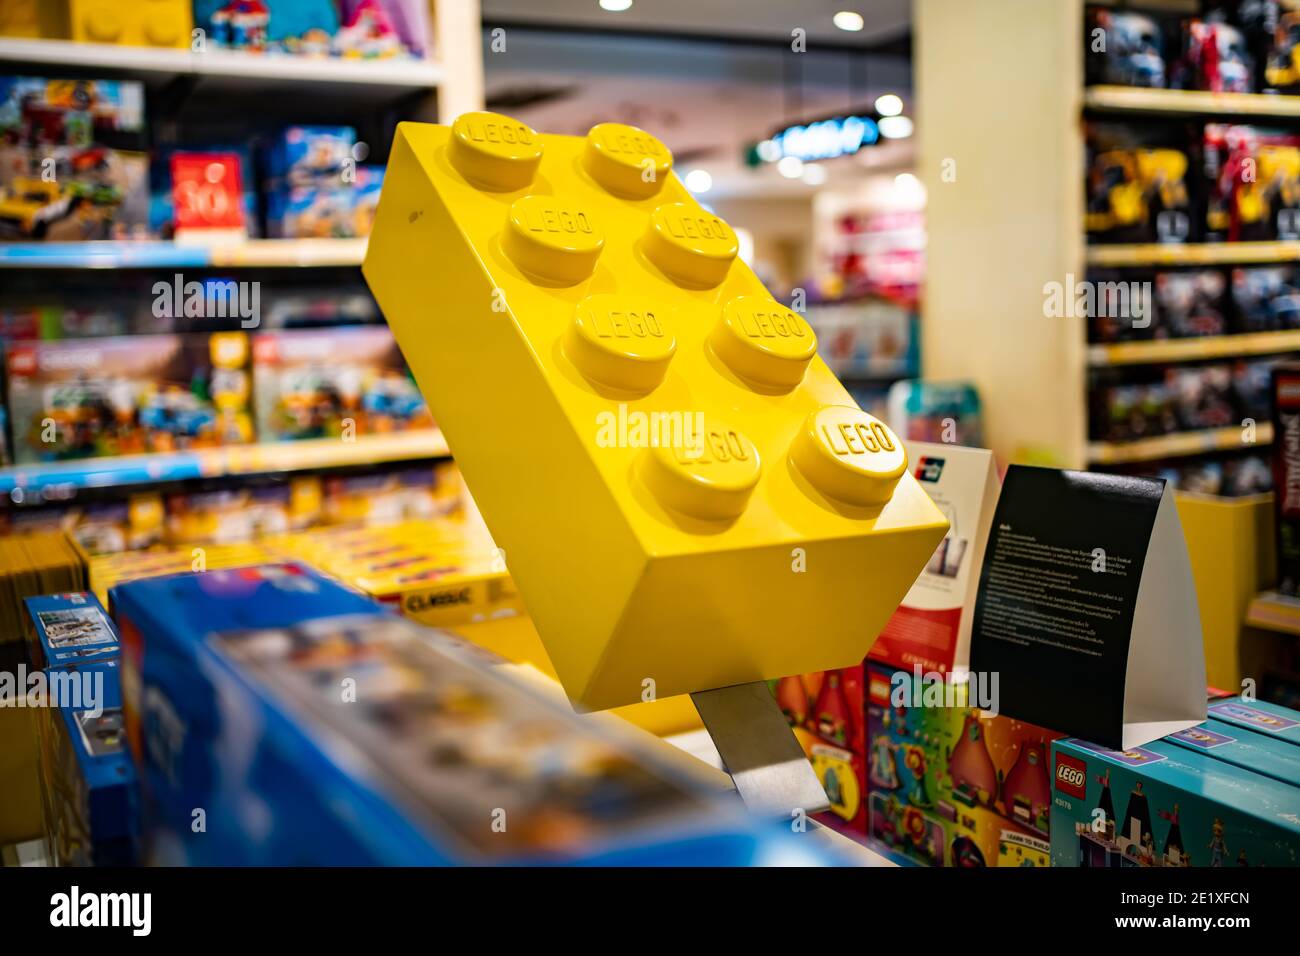 Bangkok, Thailand - 9. Januar 2021 : EIN riesiger gelber Lego-Stein auf einem Regal in einer Spielzeugabteilung in einem Kaufhaus. Stockfoto